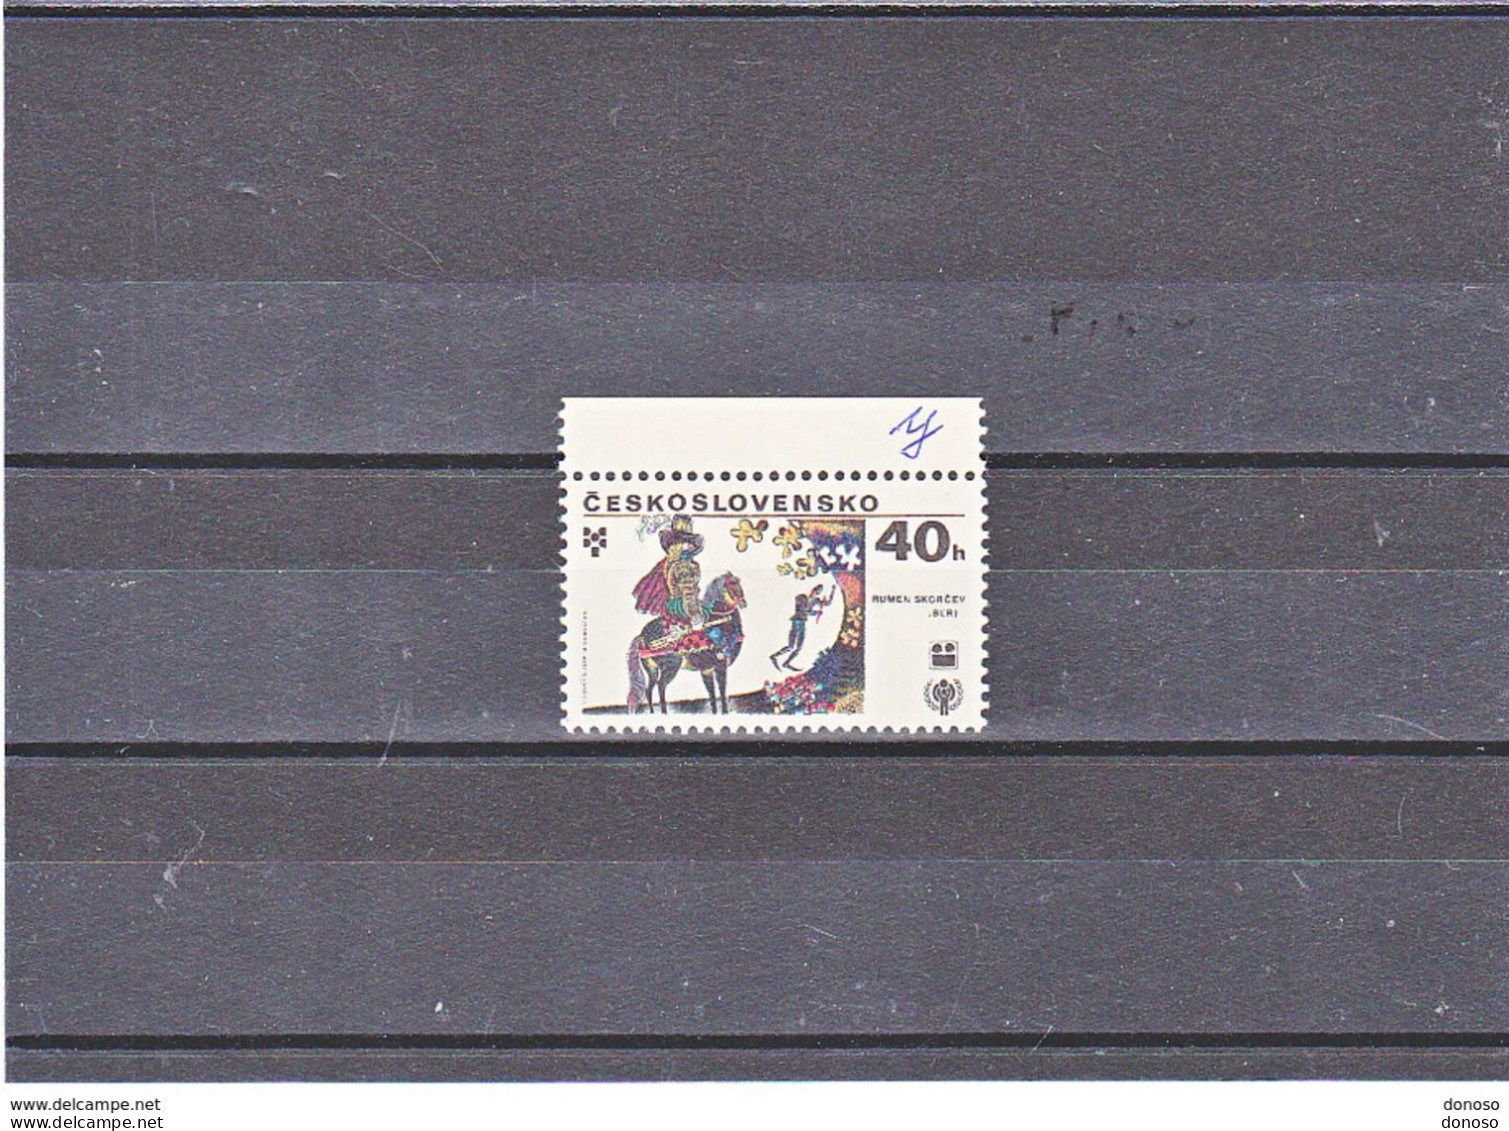 TCHECOSLOVAQUIE 1979 Année Internationale De L'enfant Variété Yvert 2346, Michel 2518y NEUF** MNH - Unused Stamps